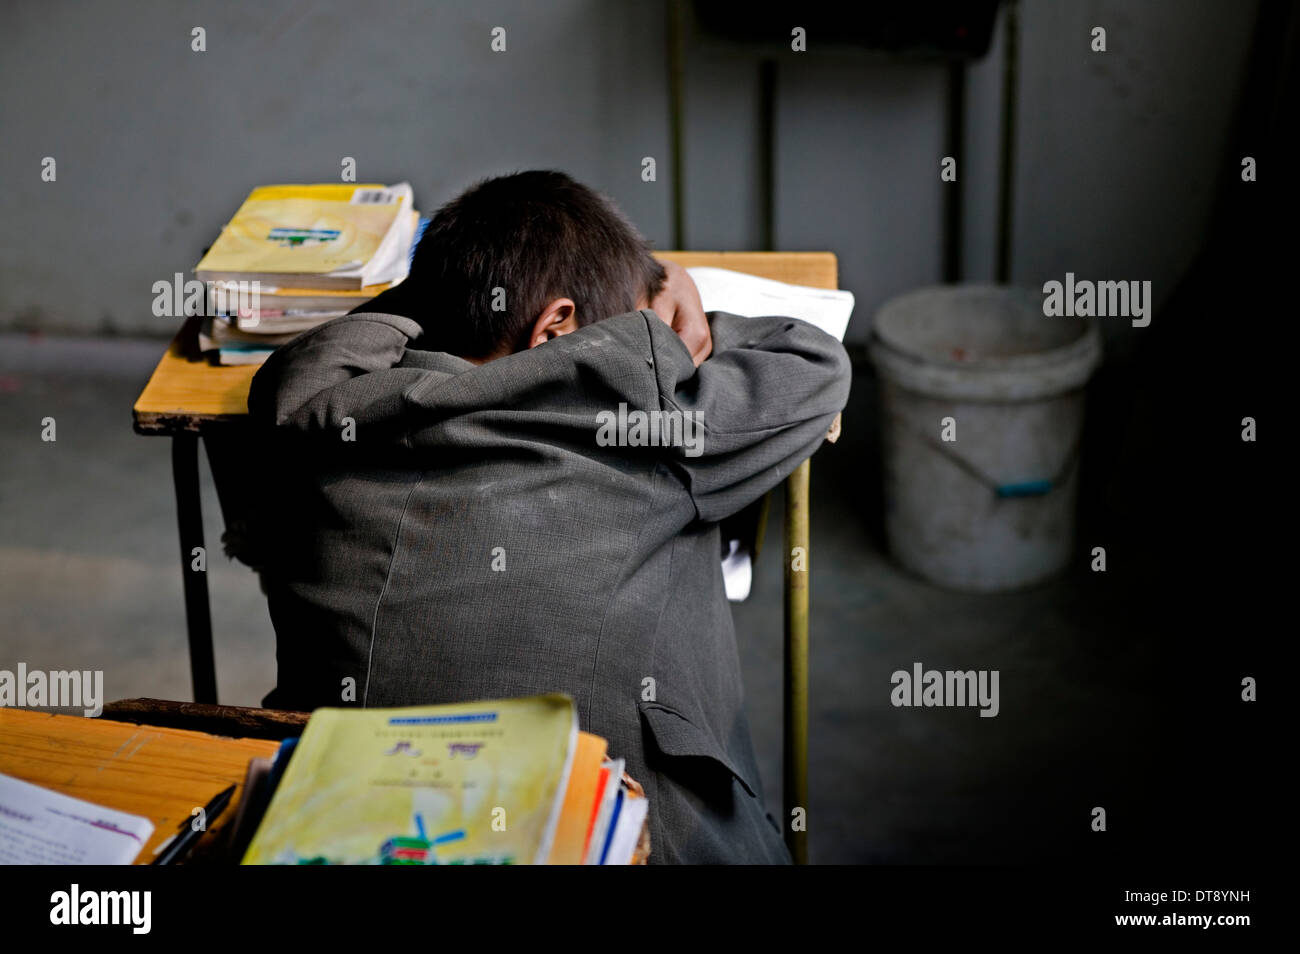 La Chine, Beijing, Beigaozhuang l'école primaire, une école pour les enfants migrants. Épuisé élève sont endormis en classe. Banque D'Images